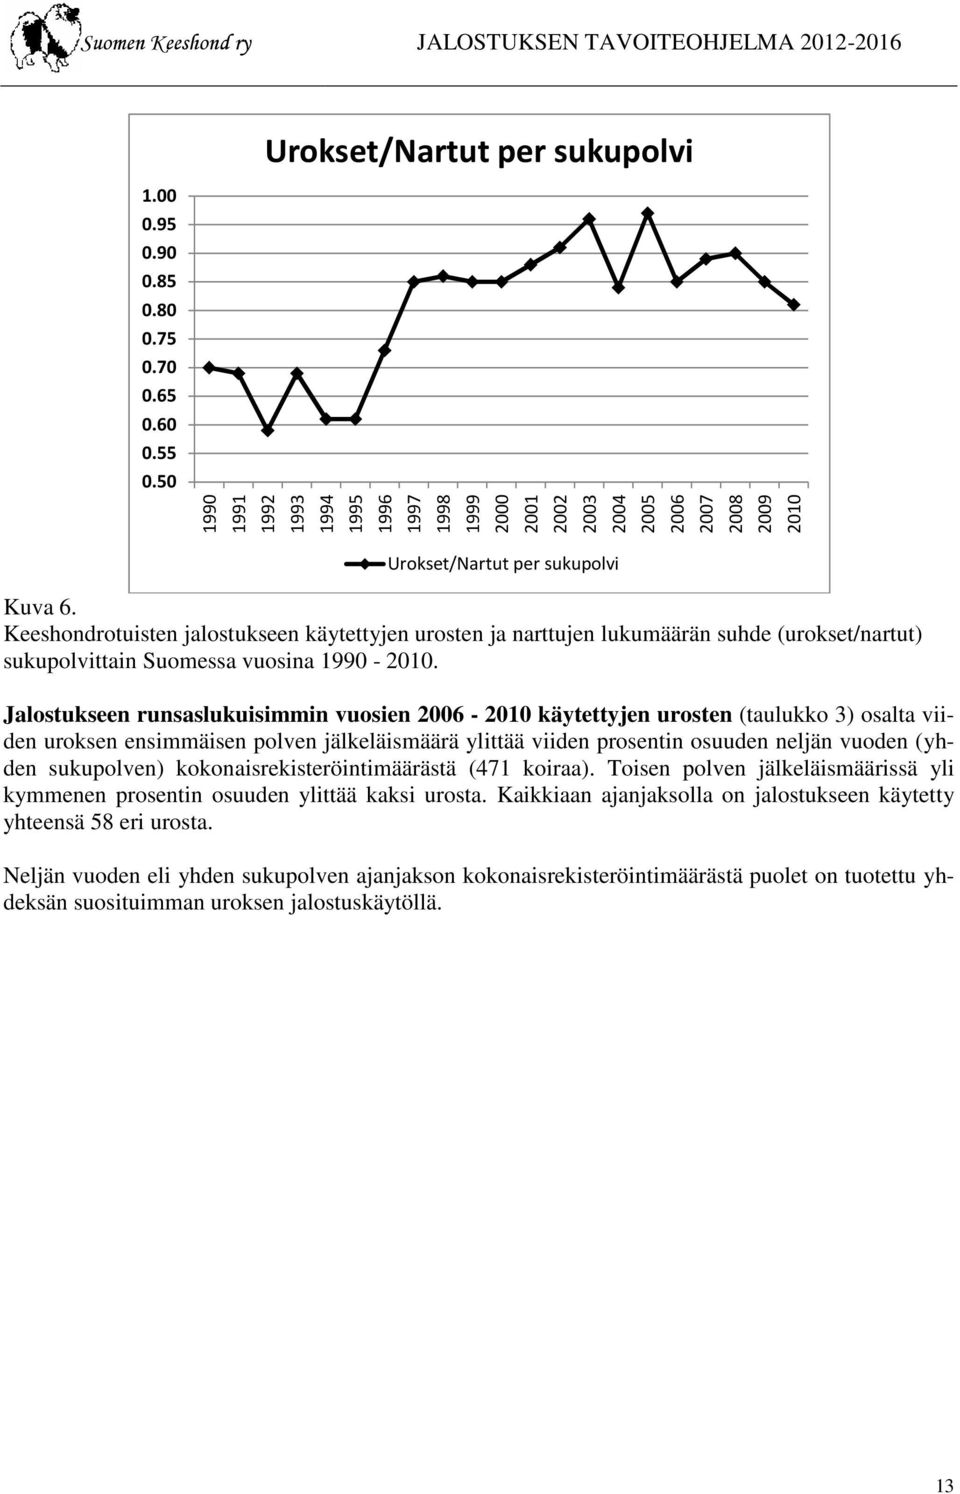 Keeshondrotuisten jalostukseen käytettyjen urosten ja narttujen lukumäärän suhde (urokset/nartut) sukupolvittain Suomessa vuosina 1990-2010.